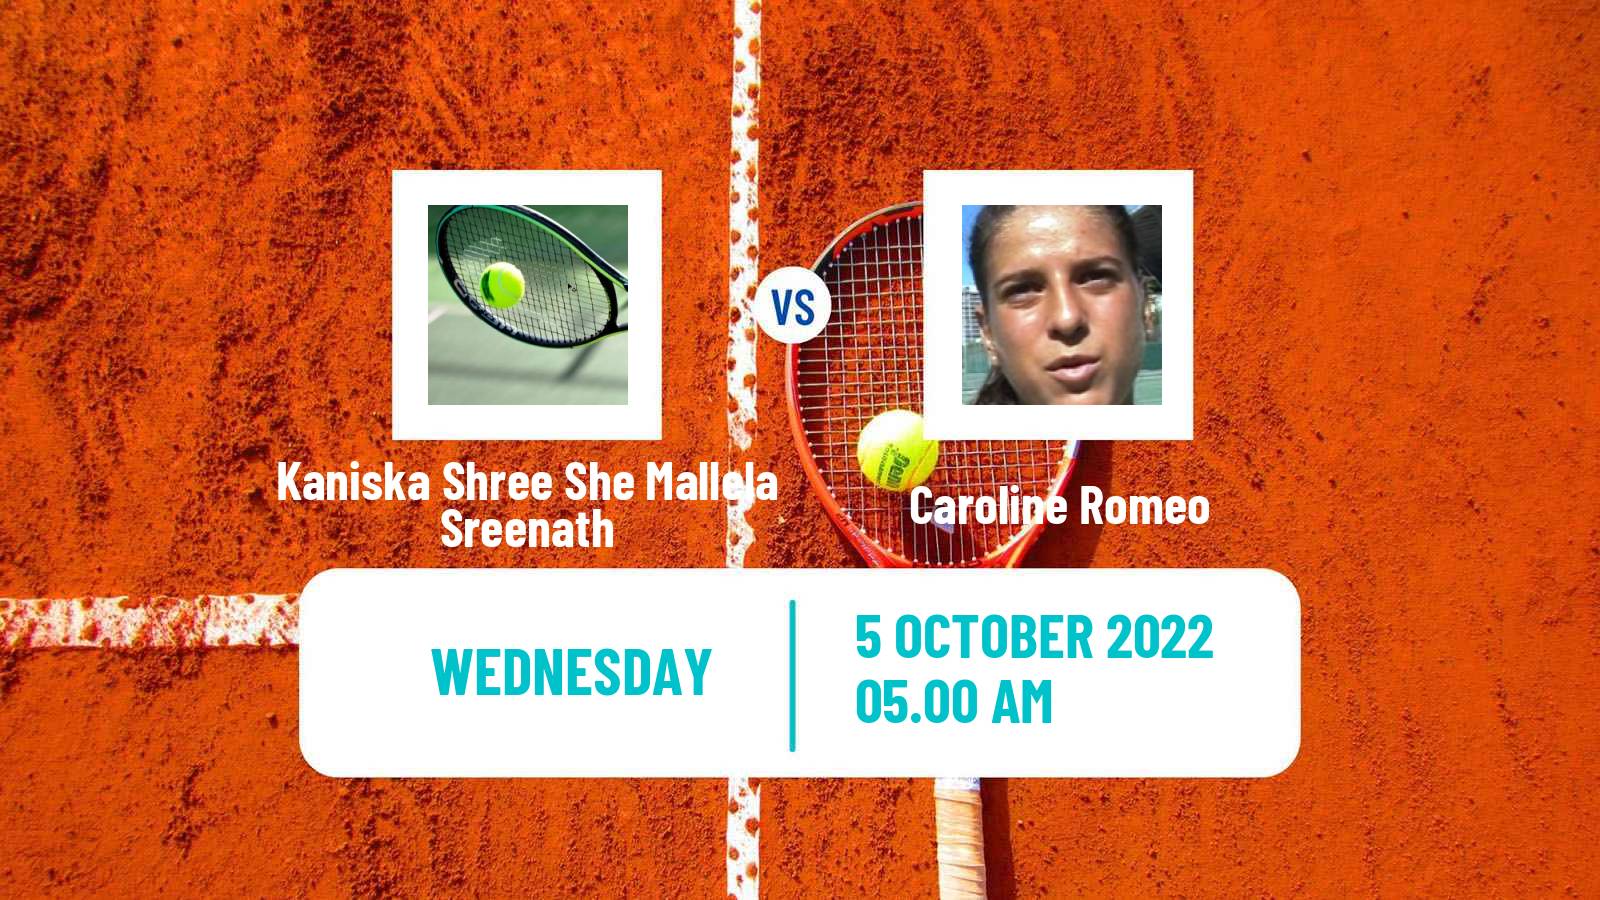 Tennis ITF Tournaments Kaniska Shree She Mallela Sreenath - Caroline Romeo